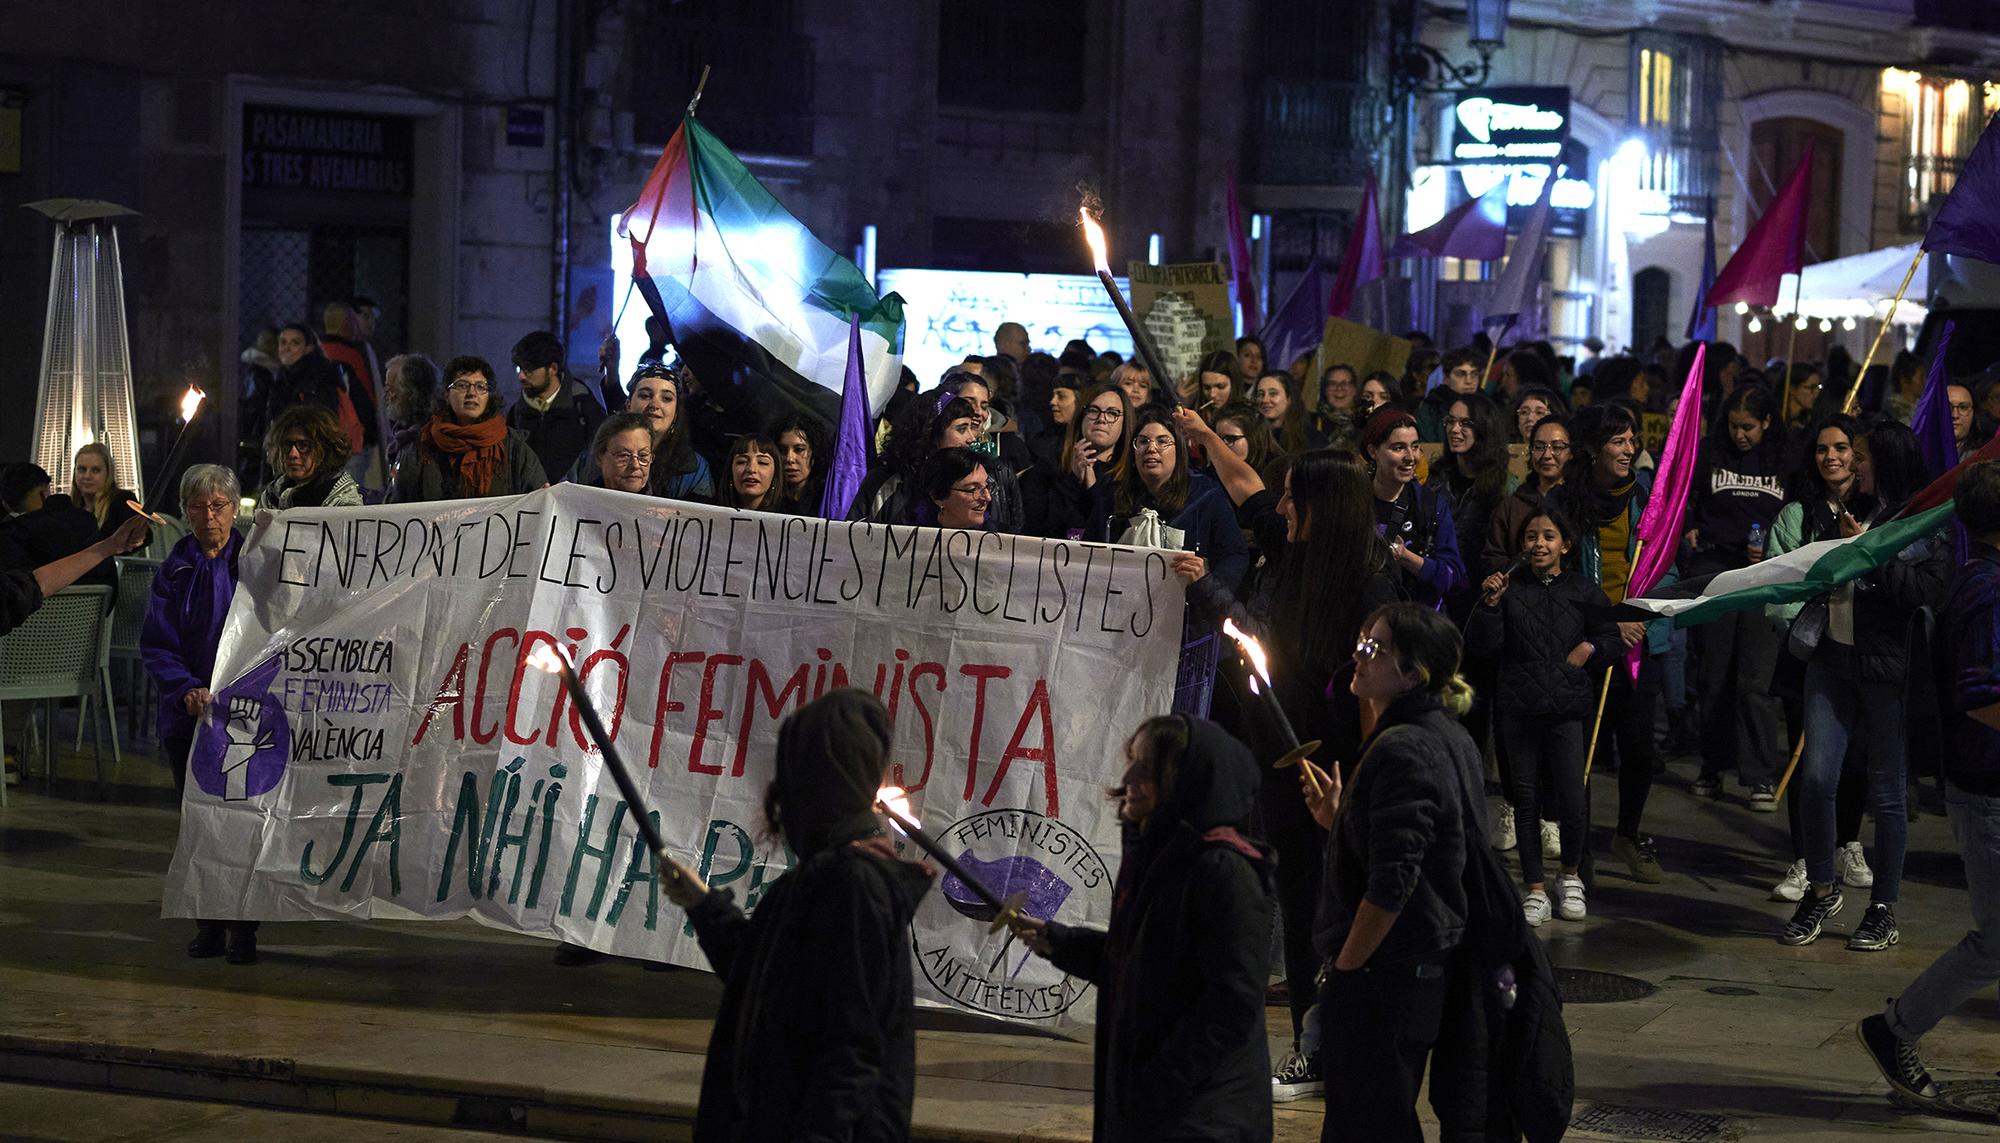 La Assemblea Feminista de València convocó una concentración en la noche del 24 de noviembre que recorrió el centro de la ciduad. - 1